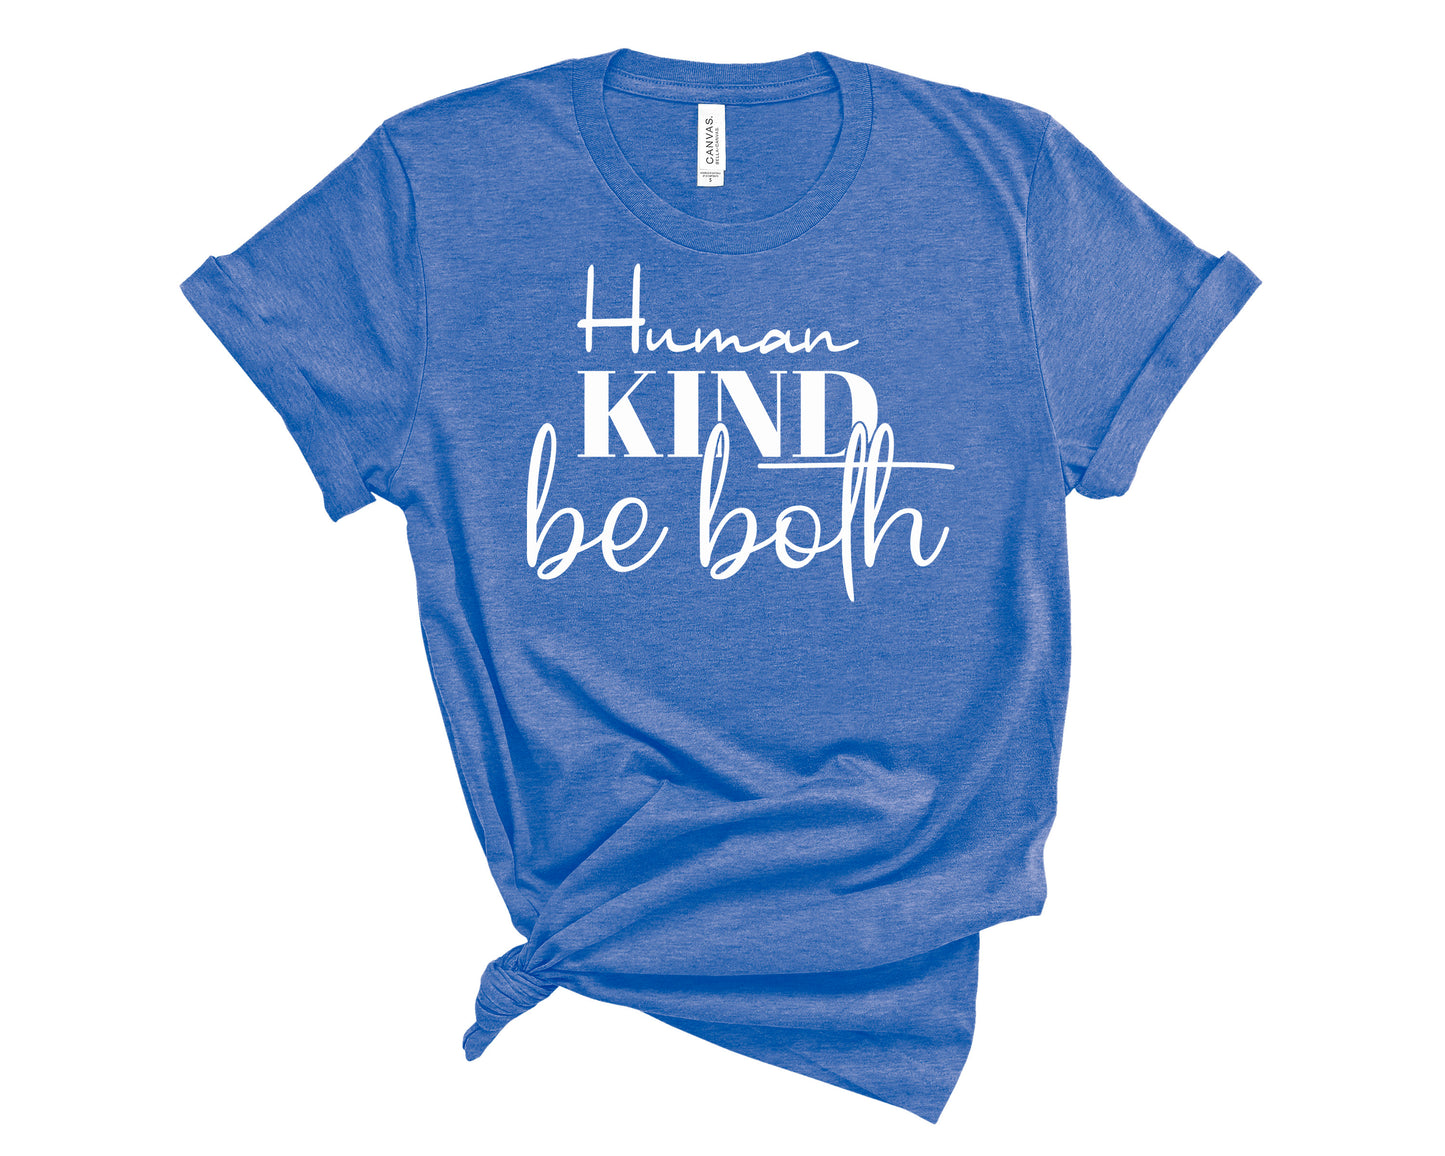 human kind be both shirt